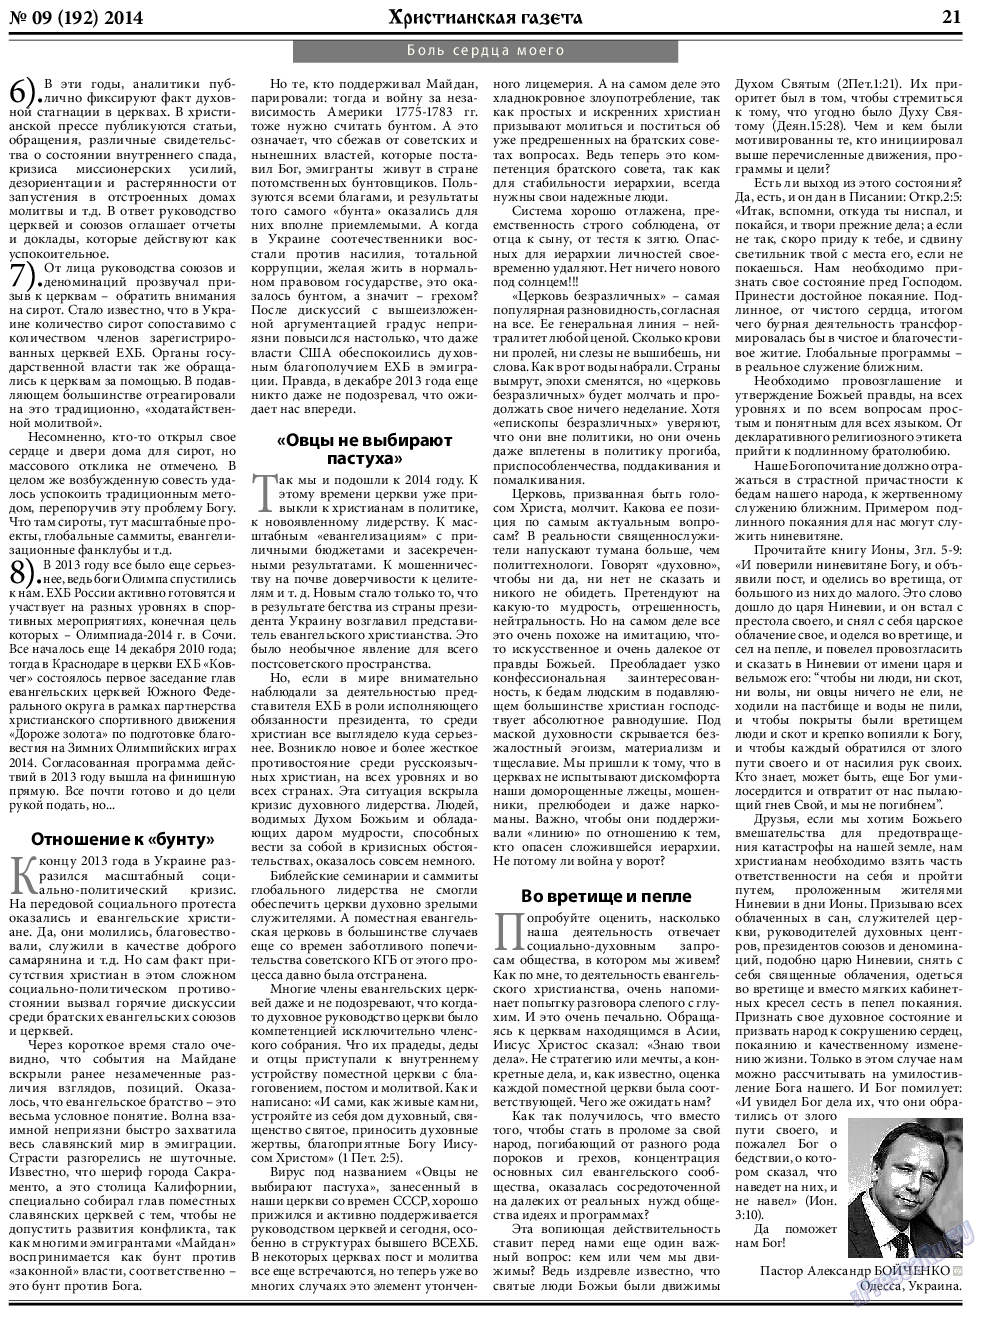 Христианская газета, газета. 2014 №9 стр.29